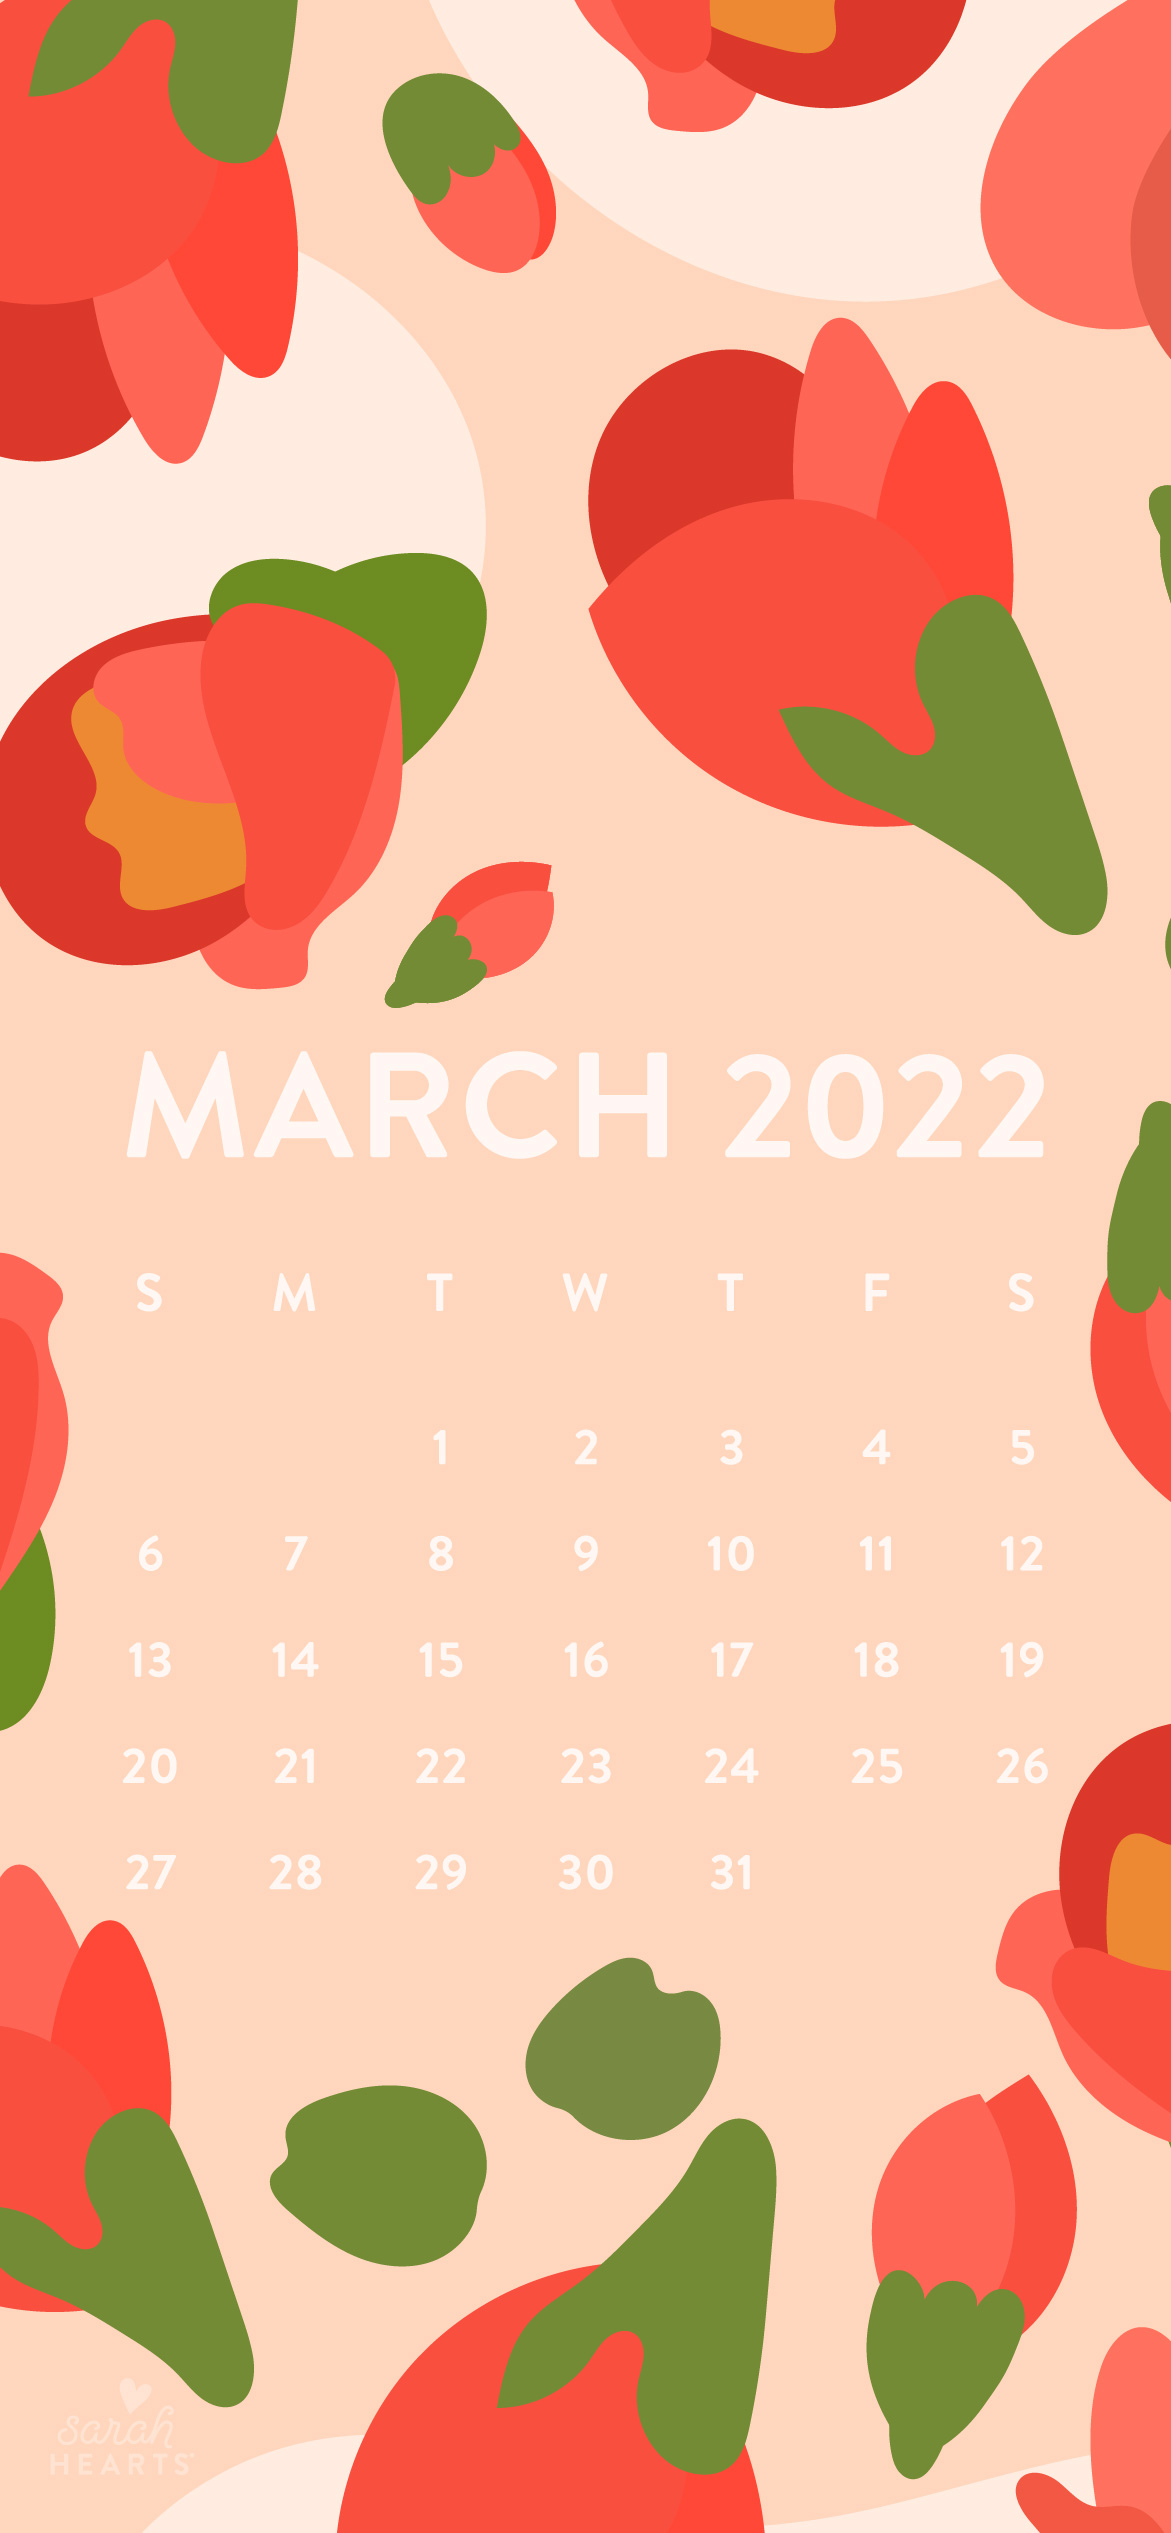 Lịch tháng 3 năm 2022 in miễn phí: Giờ đây bạn có thể sắp xếp lịch những công việc trong tháng 3 năm 2022 với một mẫu lịch đẹp mắt và miễn phí. Bạn sẽ không phải bỏ ra nhiều chi phí cho một mẫu lịch chất lượng với thiết kế tuyệt đẹp. Bạn có thể in nó hoặc sử dụng nó như một ứng dụng trên điện thoại của bạn- cả hai đều là miễn phí. Hãy truy cập ngay để tải về lịch tháng 3 năm 2022 miễn phí theo link bên dưới.